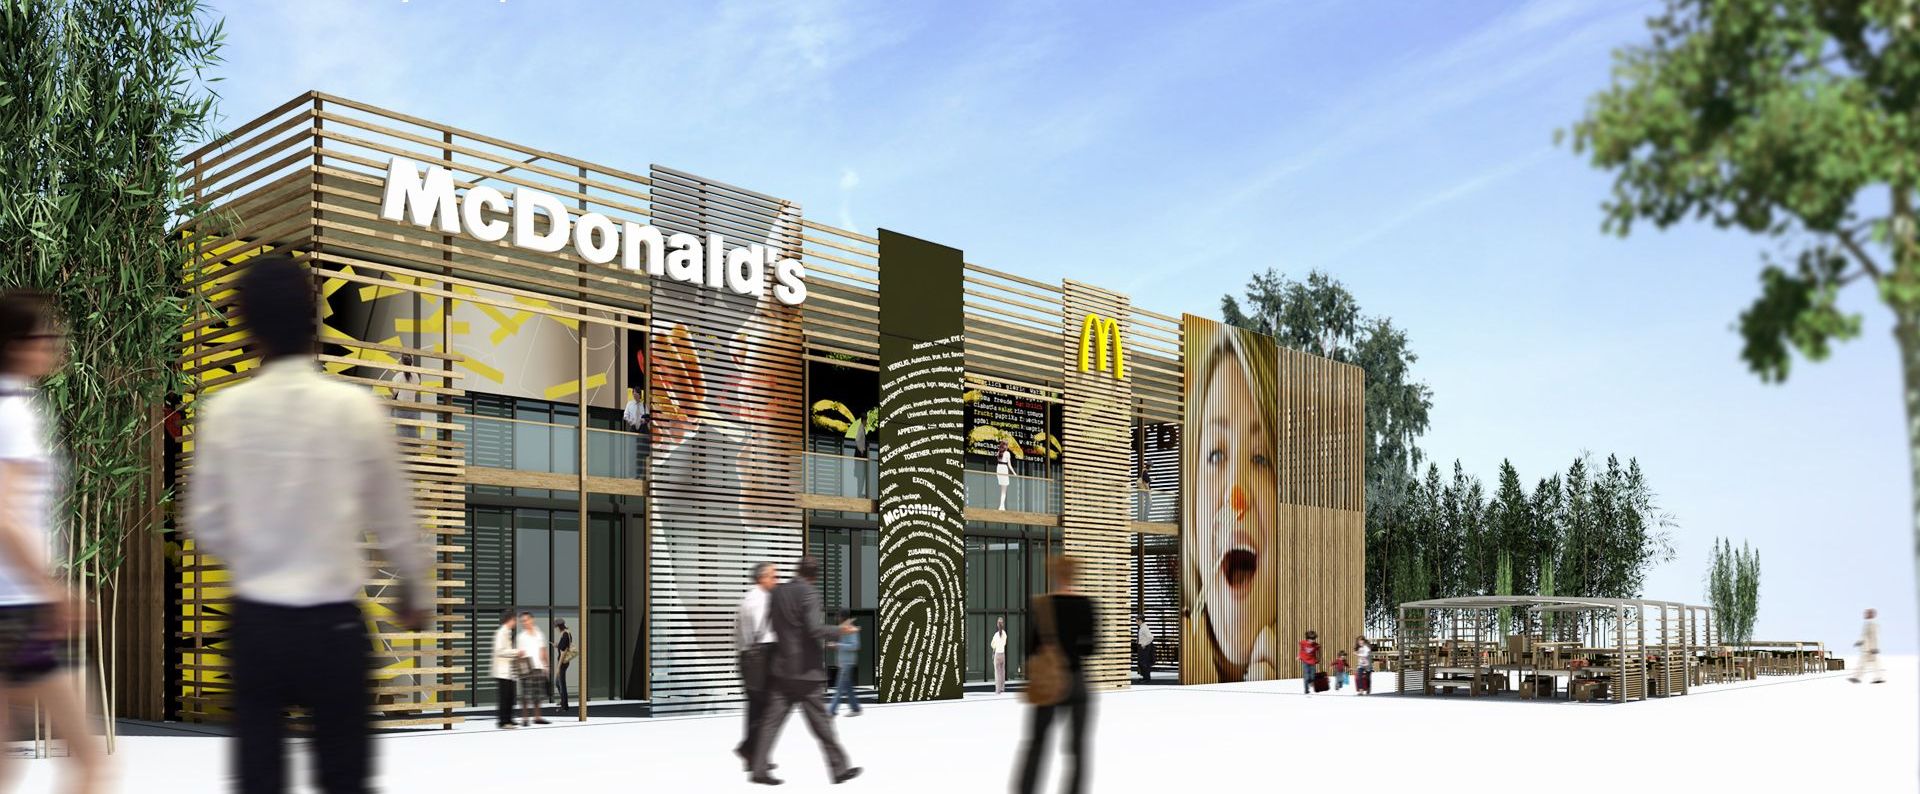 McDonalds_restuarant_for_London_2012